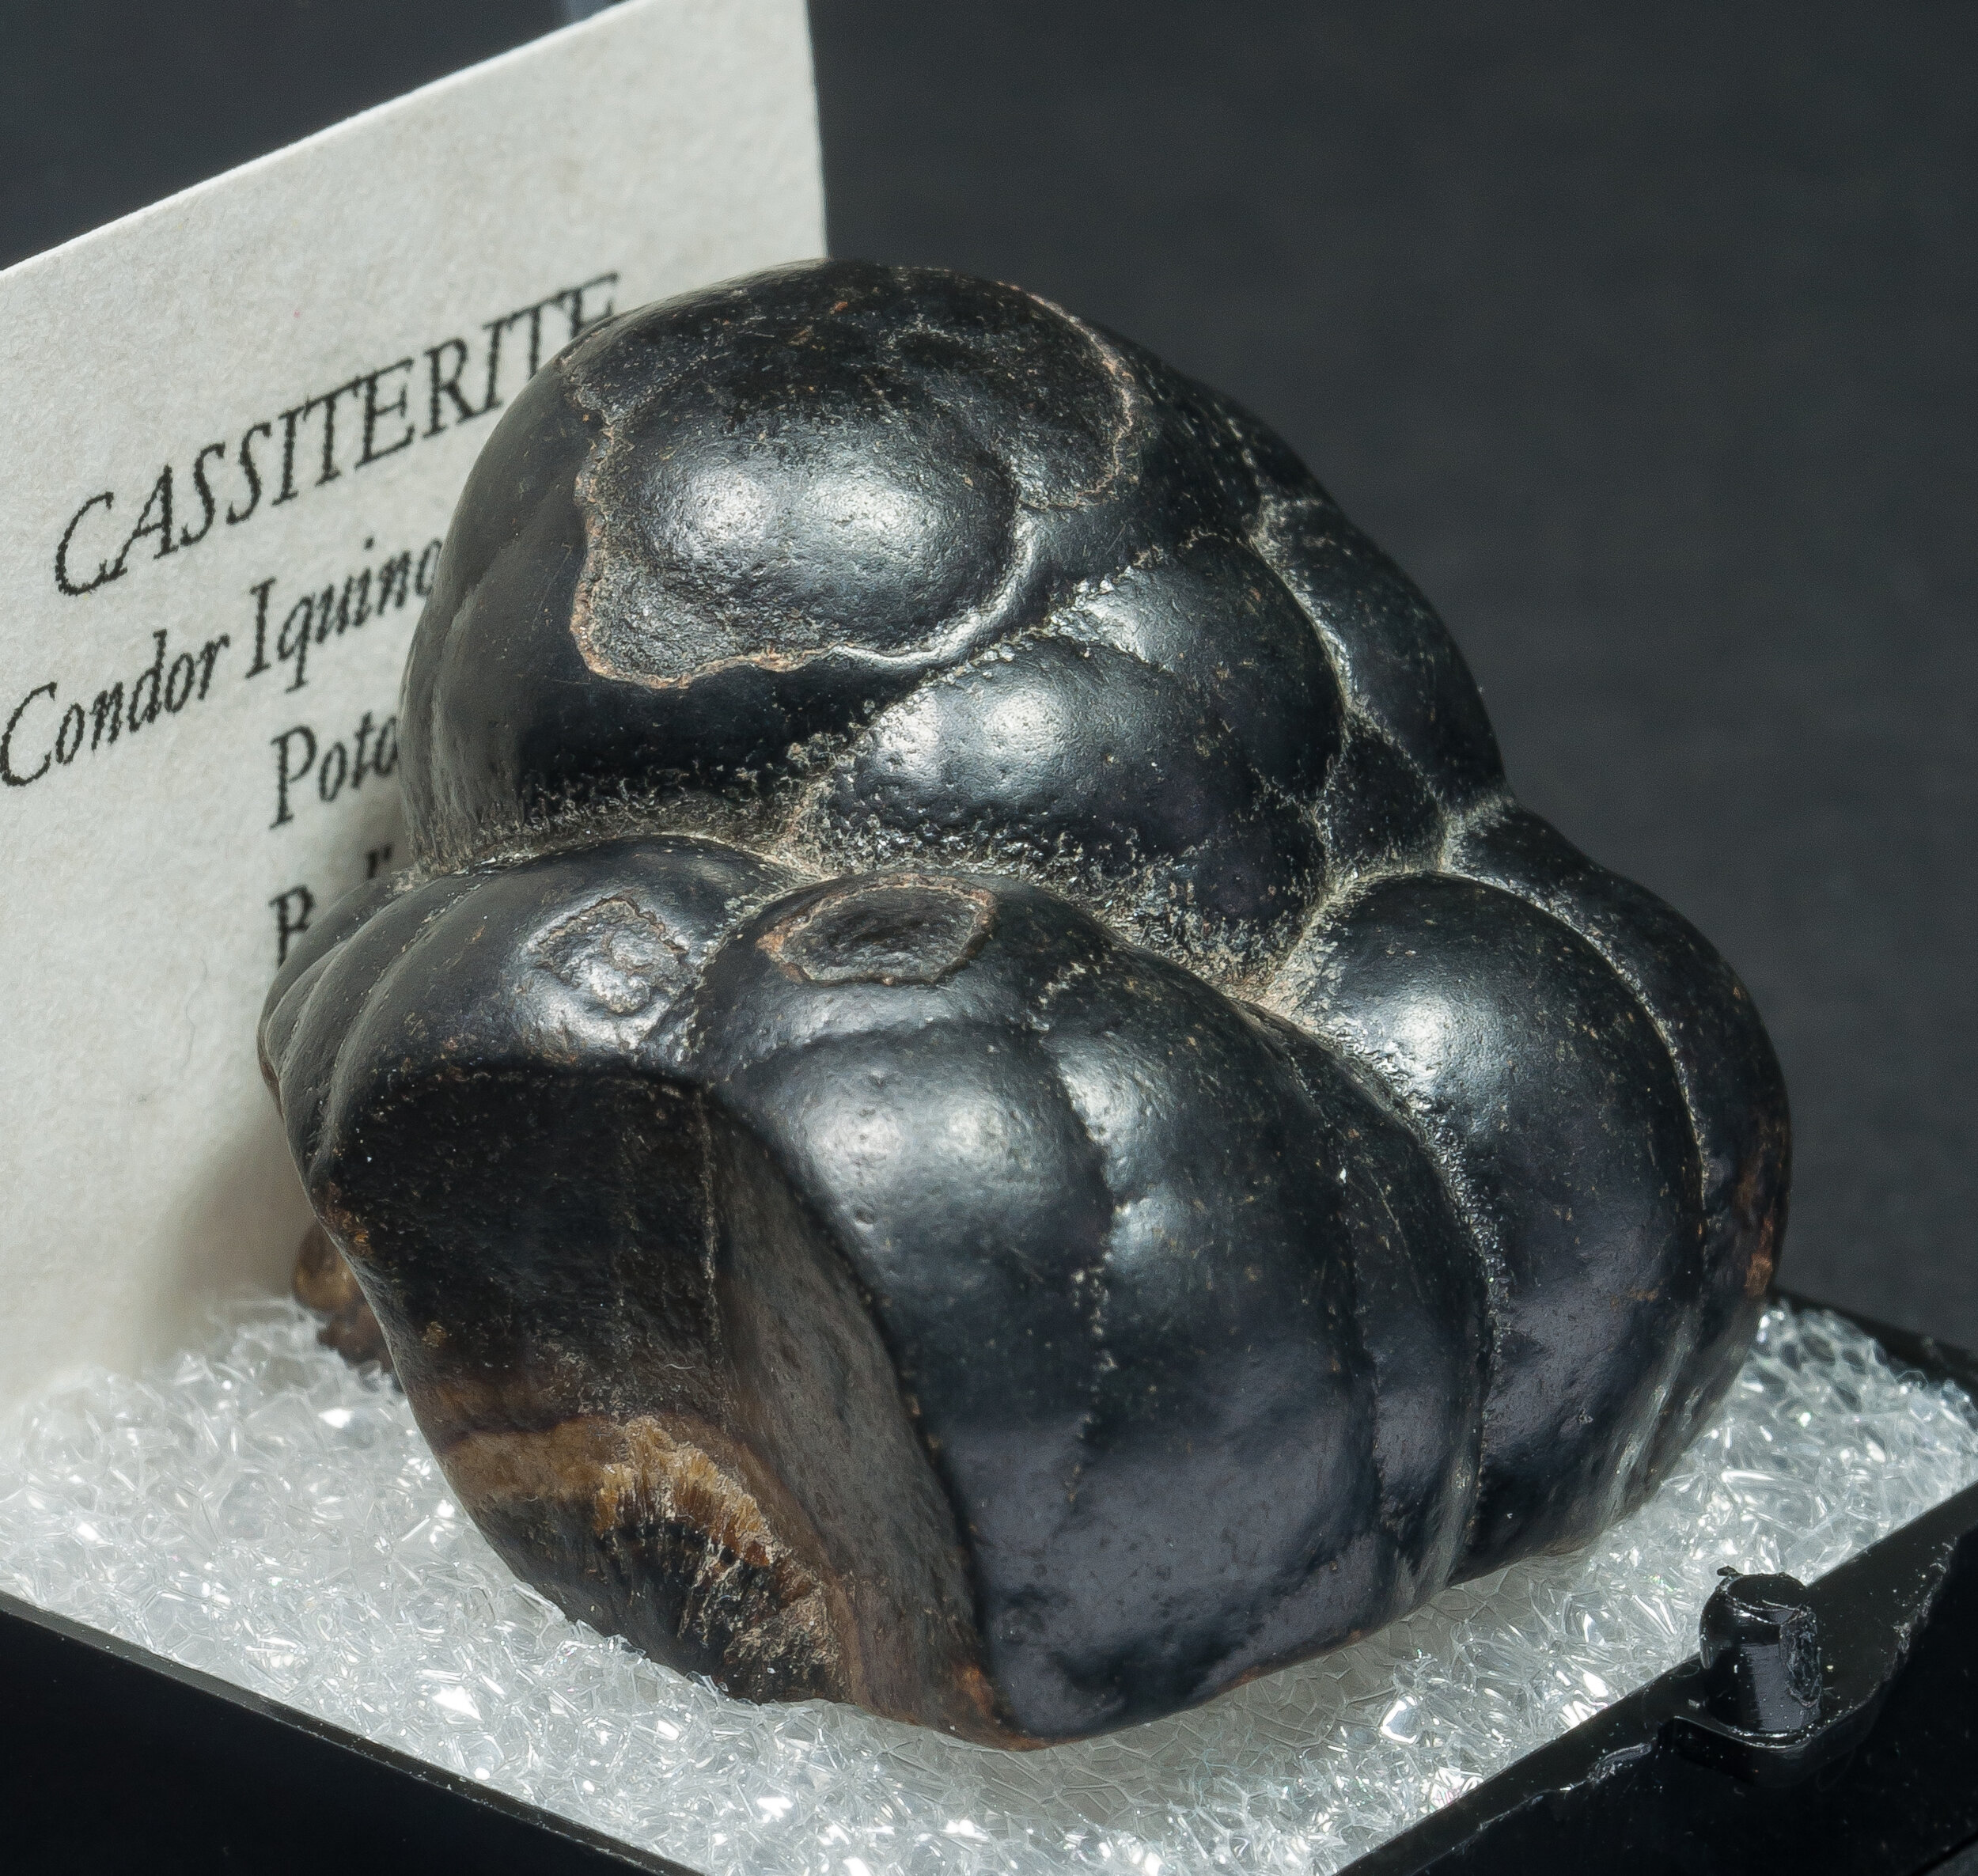 specimens/s_imagesAO2/Cassiterite-TYR64AO2s.jpg